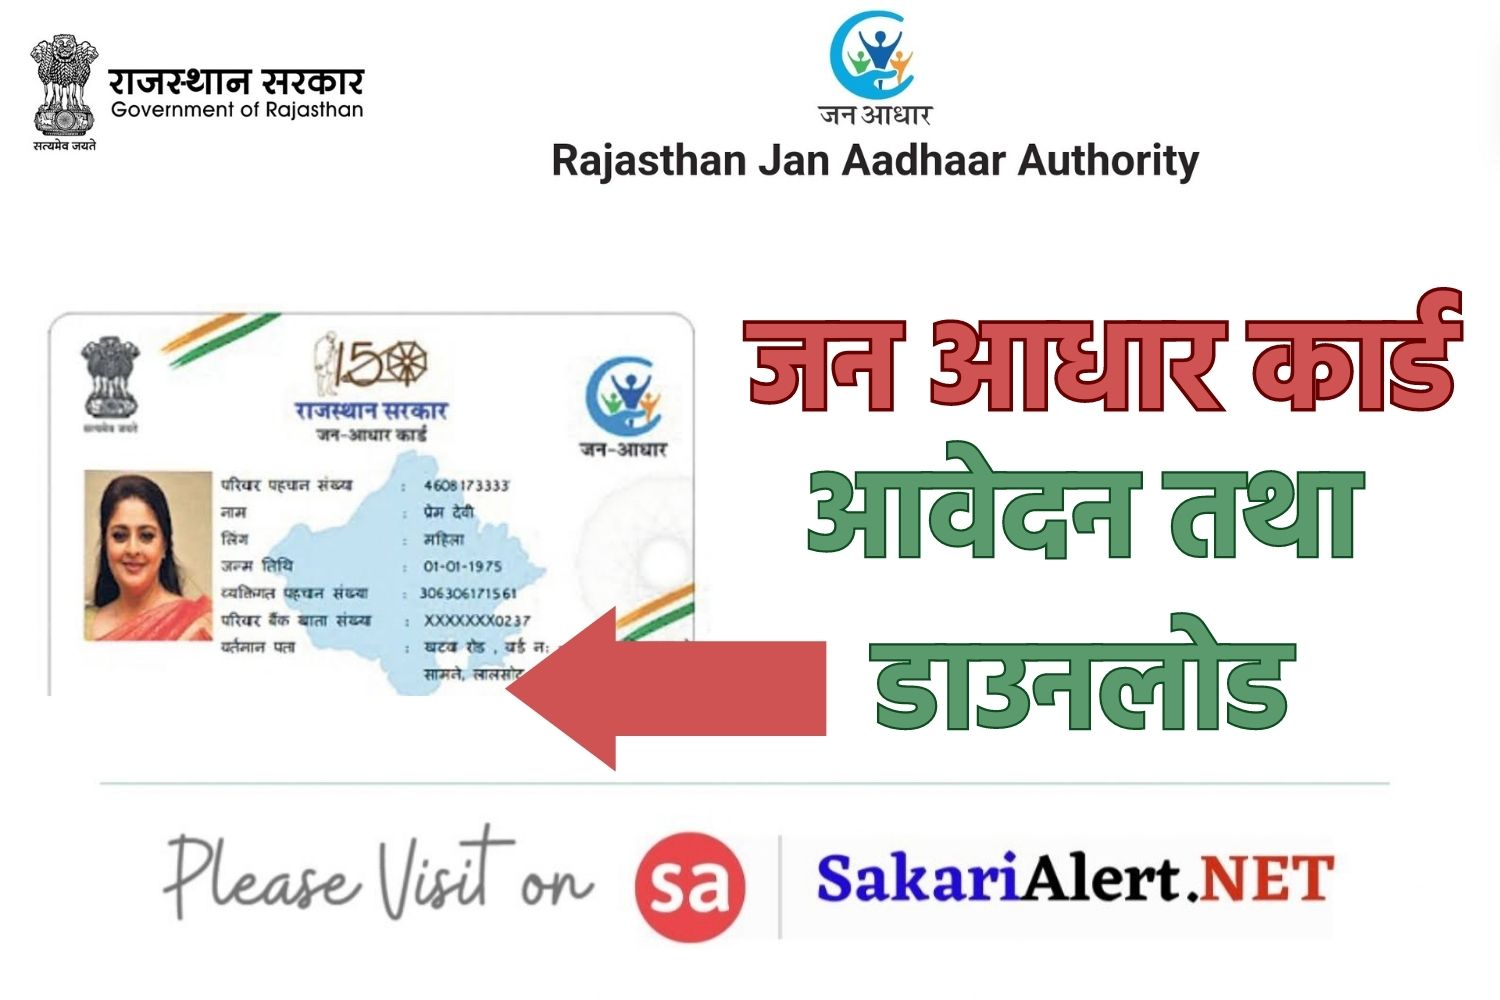 Jan Aadhaar Card : मोबाइल फोन पर जन आधार कार्ड आवेदन तथा डाउनलोड कैसे करें? जानें